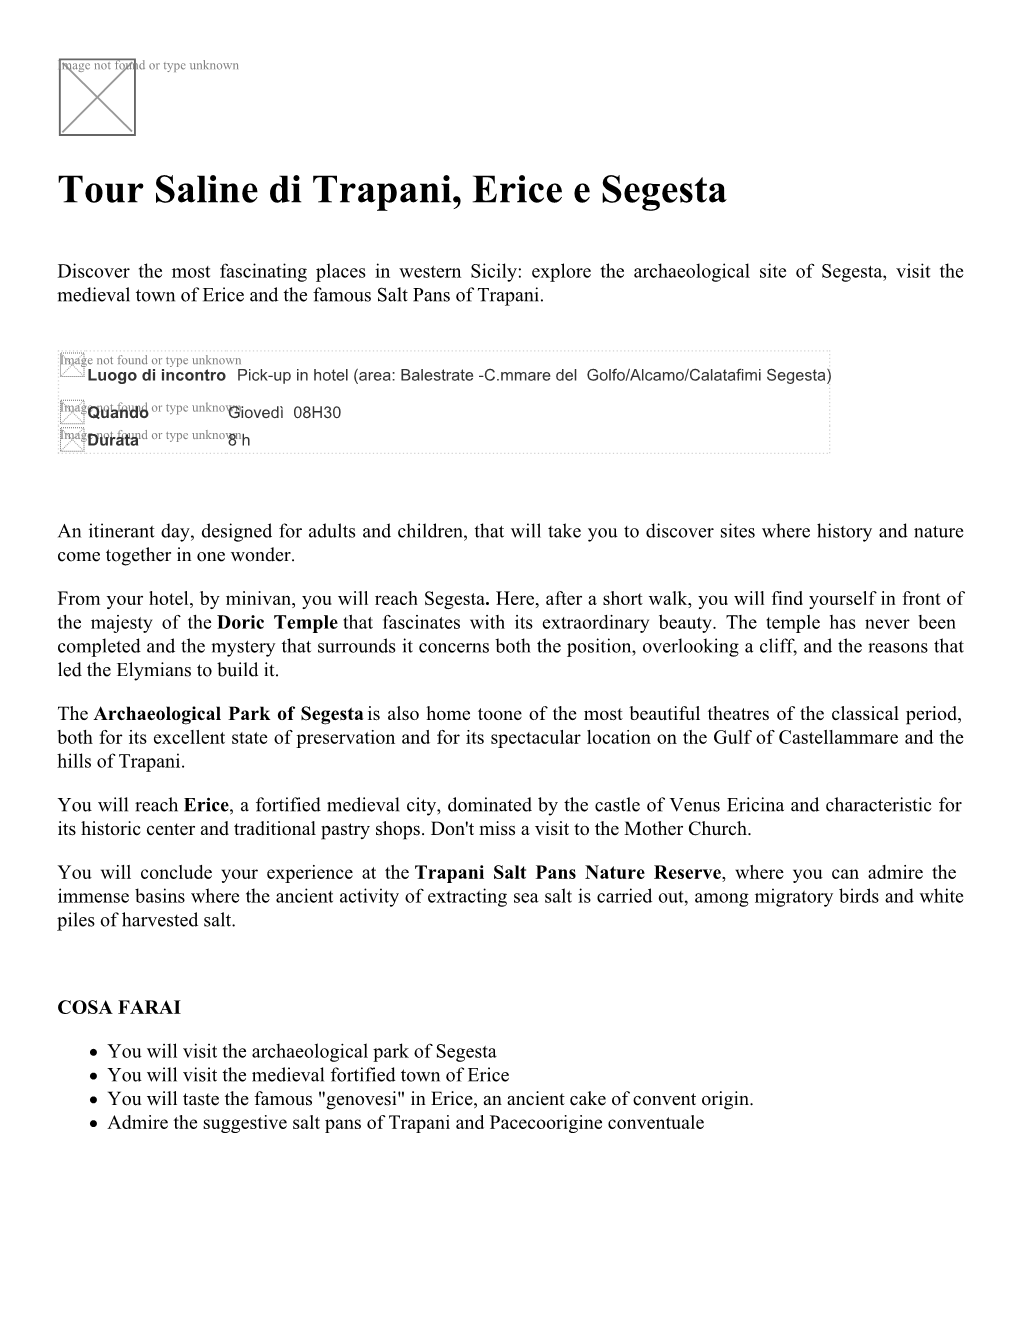 Tour Saline Di Trapani, Erice E Segesta